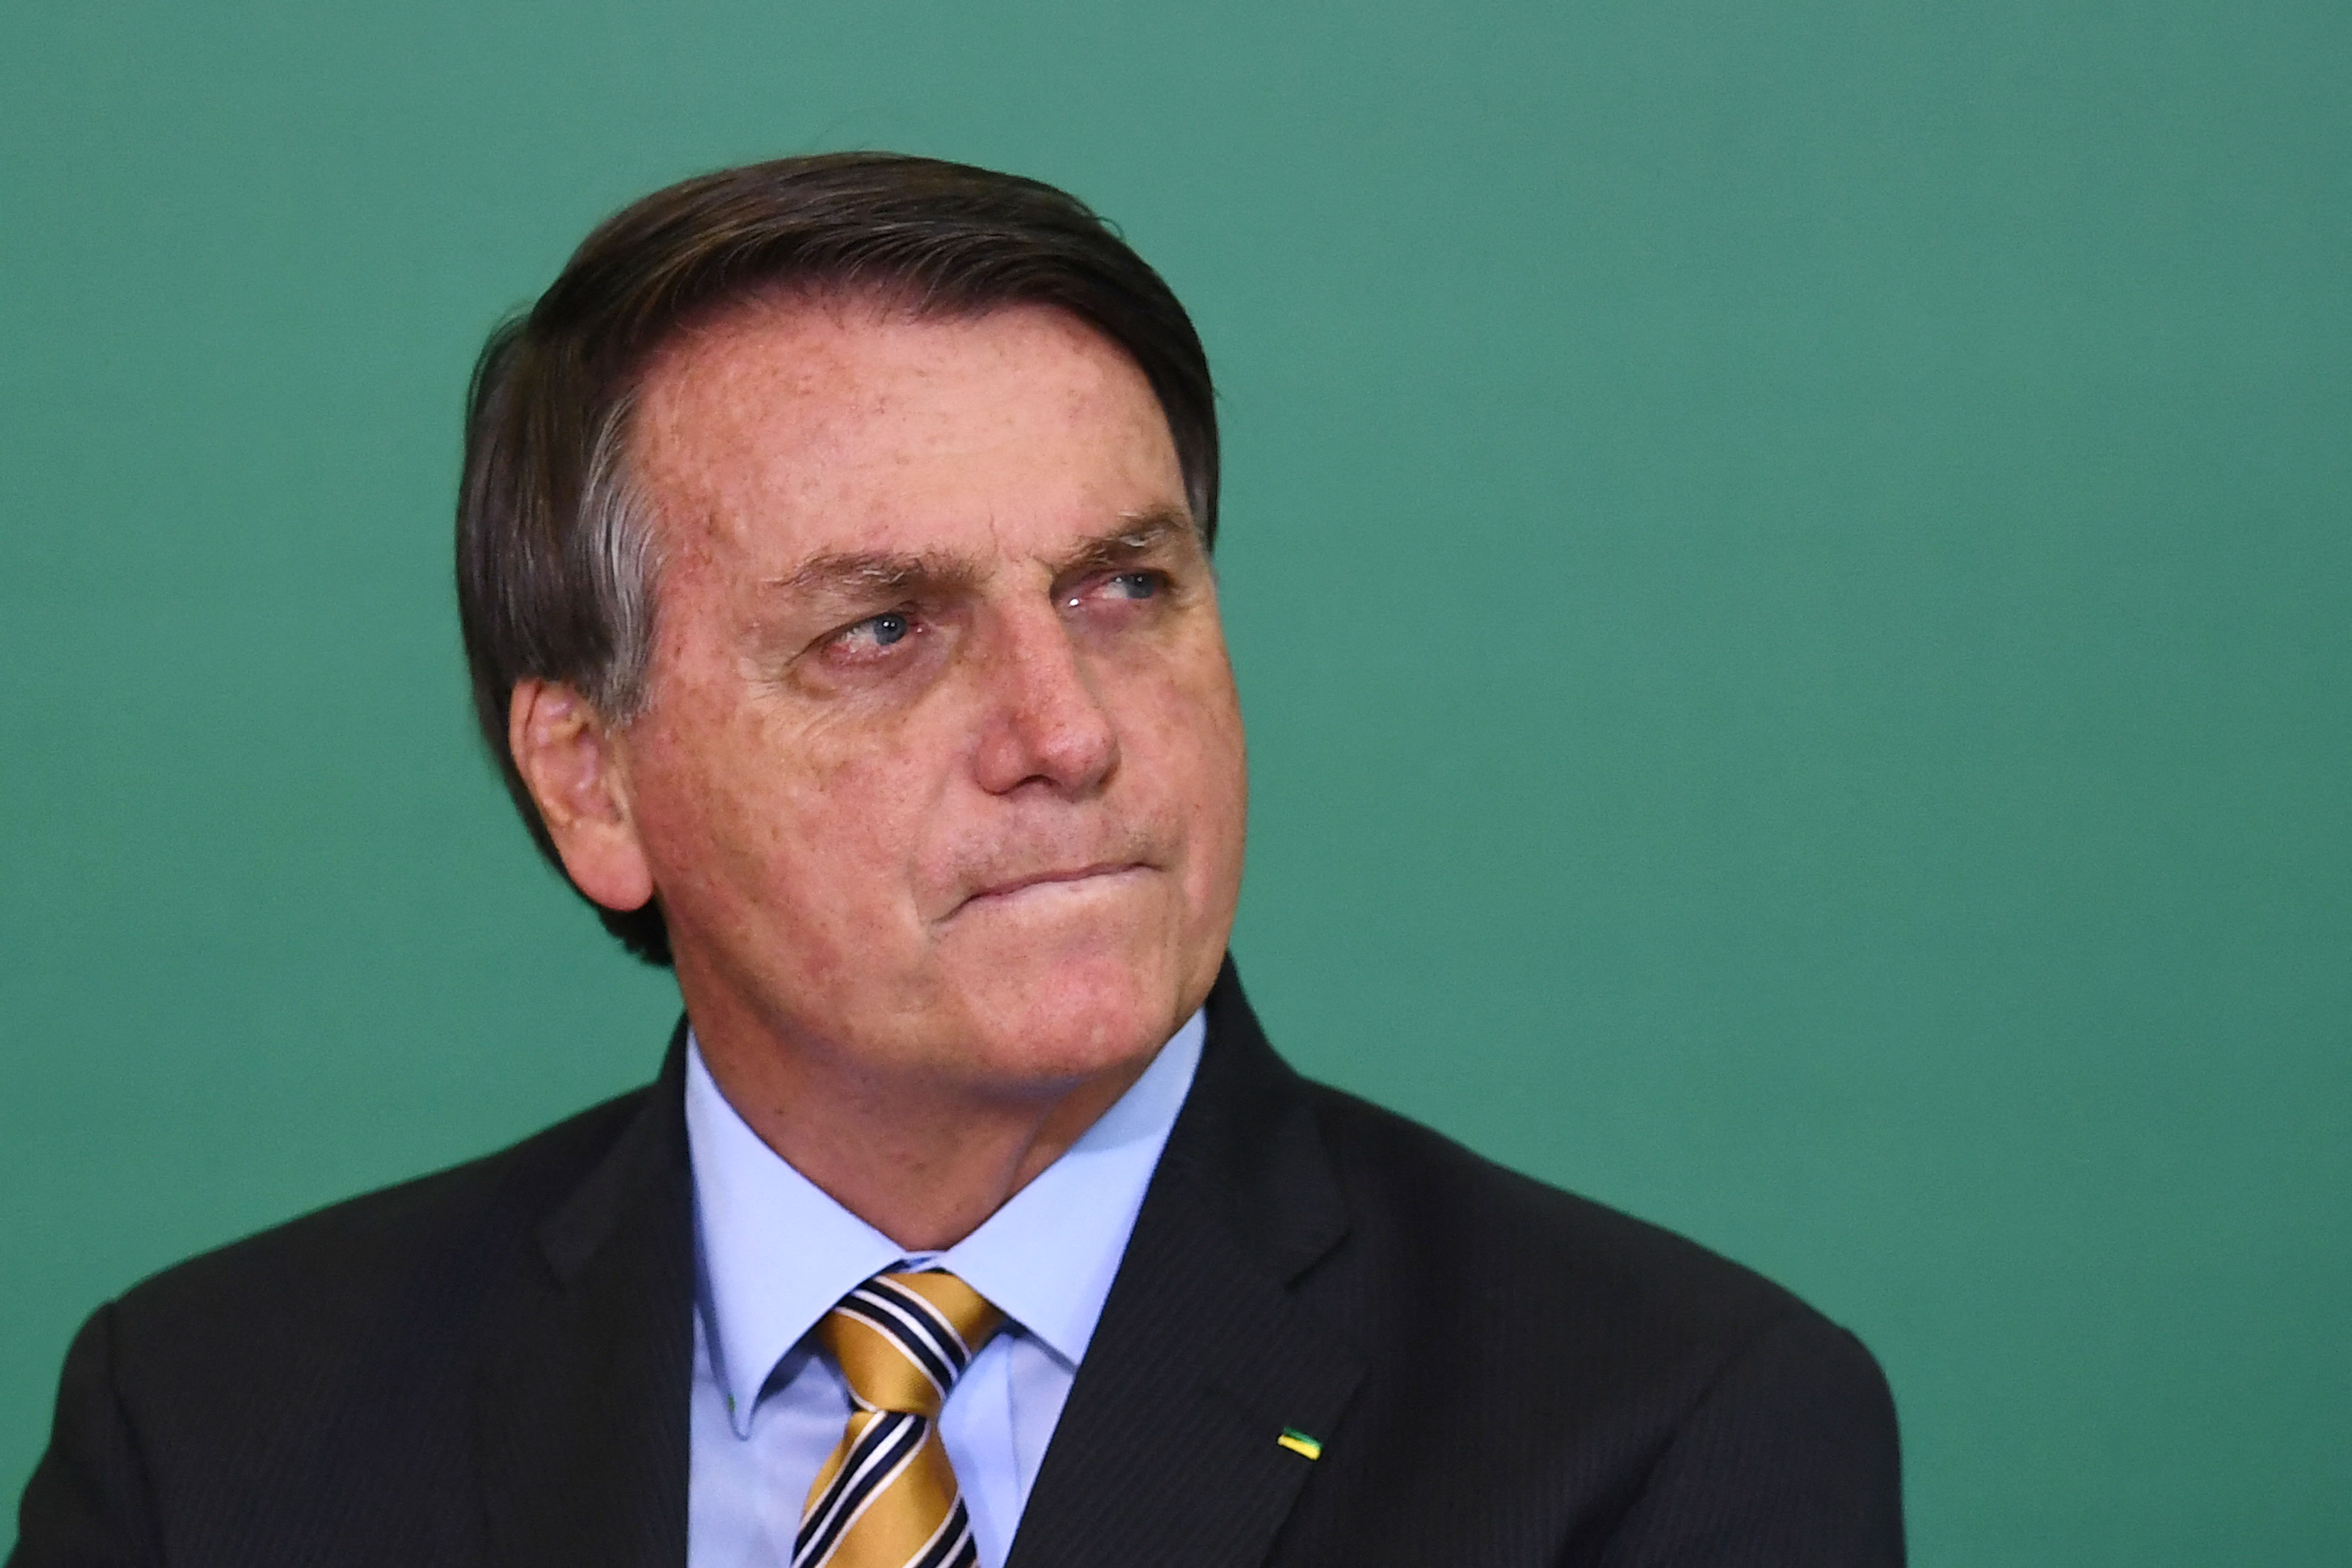 Brazília elnöke egy nap alatt megszegte a klímacsúcson tett ígéretét